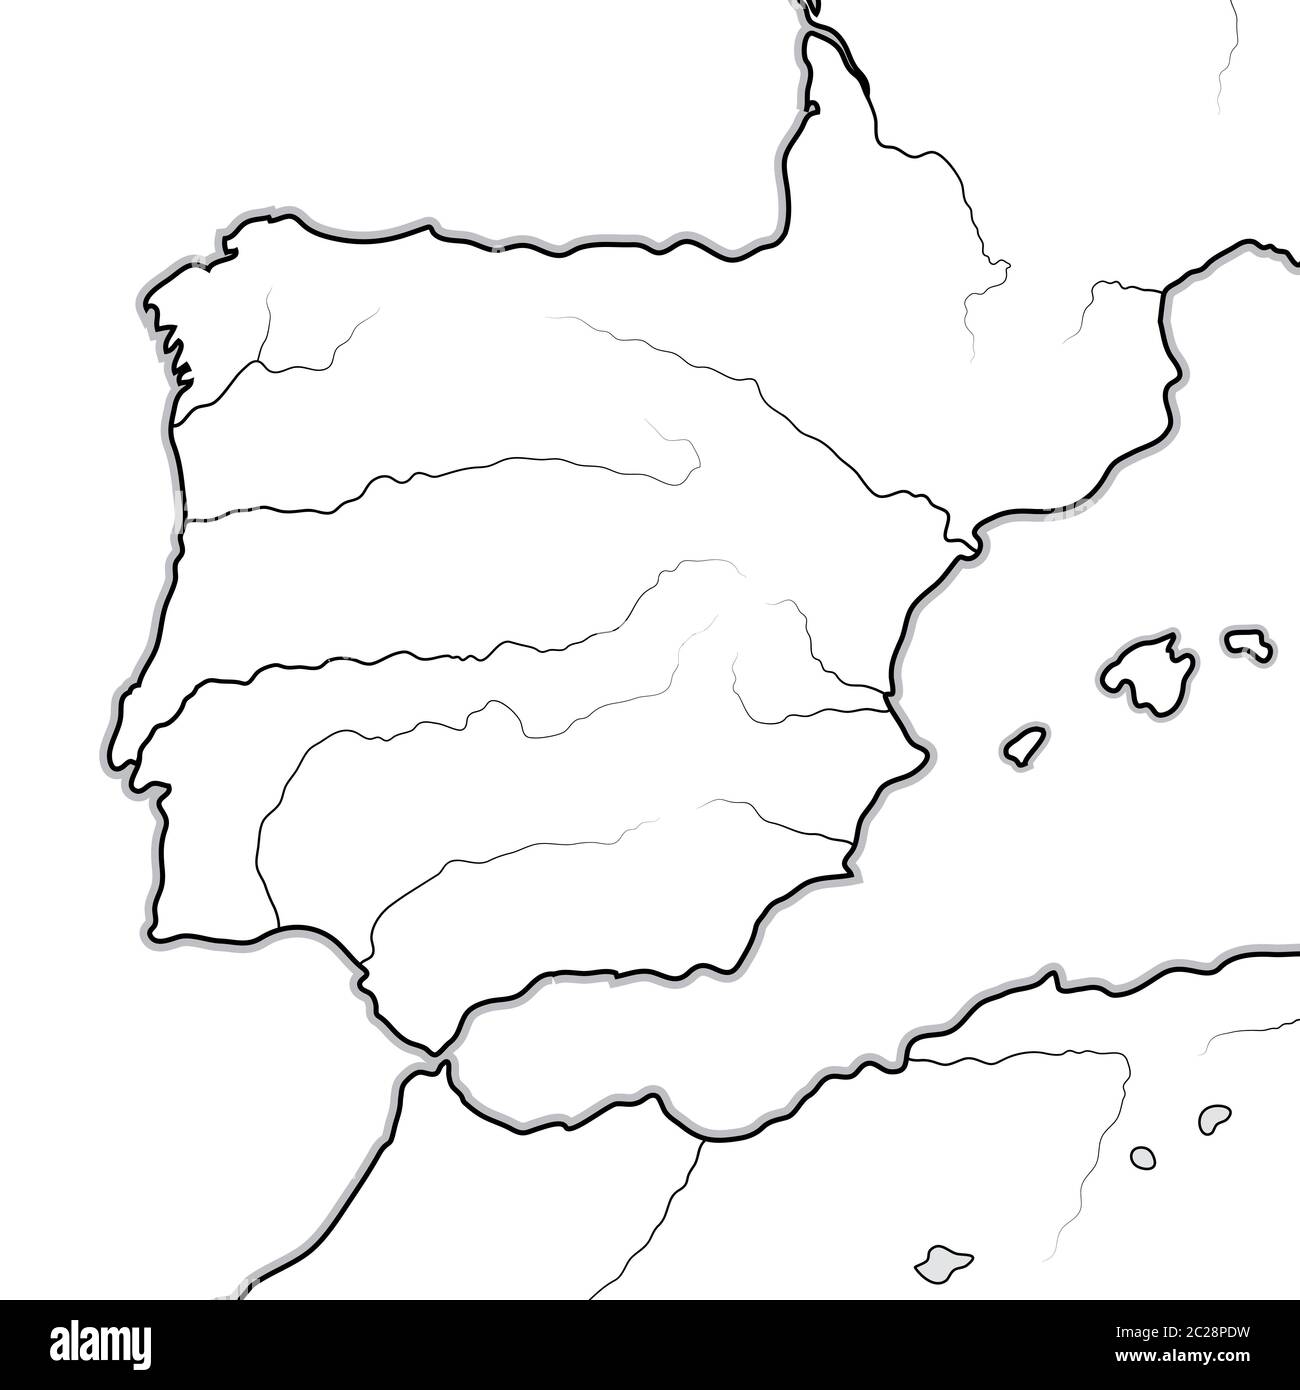 Mapa de las tierras ESPAÑOLAS: España, Portugal, Cataluña, Iberia, los Pirineos. Gráfico geográfico. Foto de stock